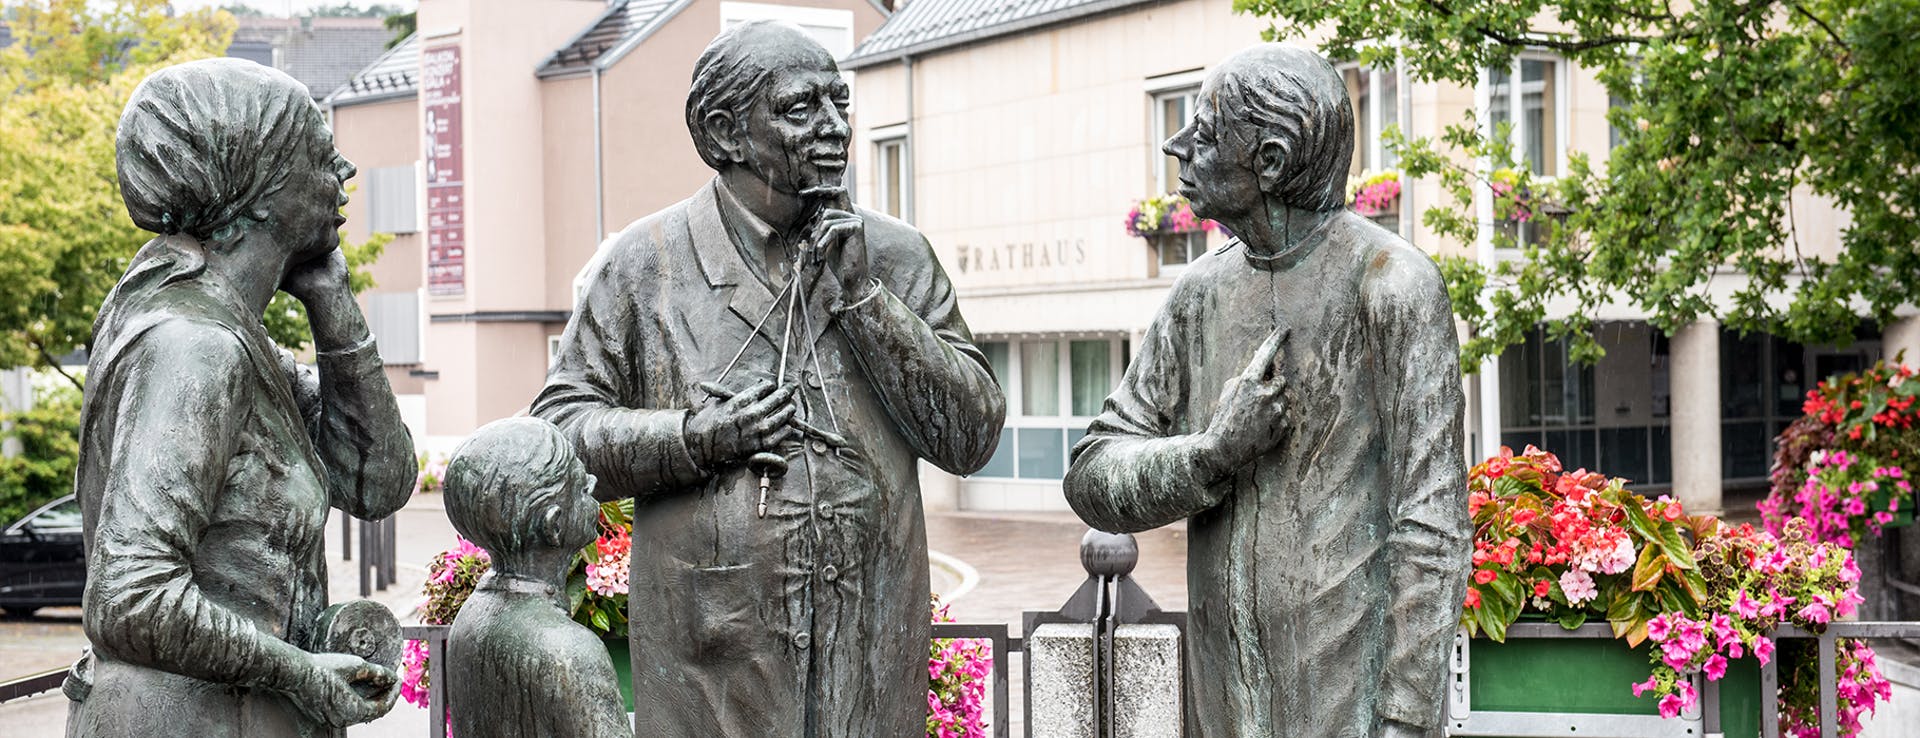 Bronze Skulpturen vor dem Rathaus in Birkenfeld